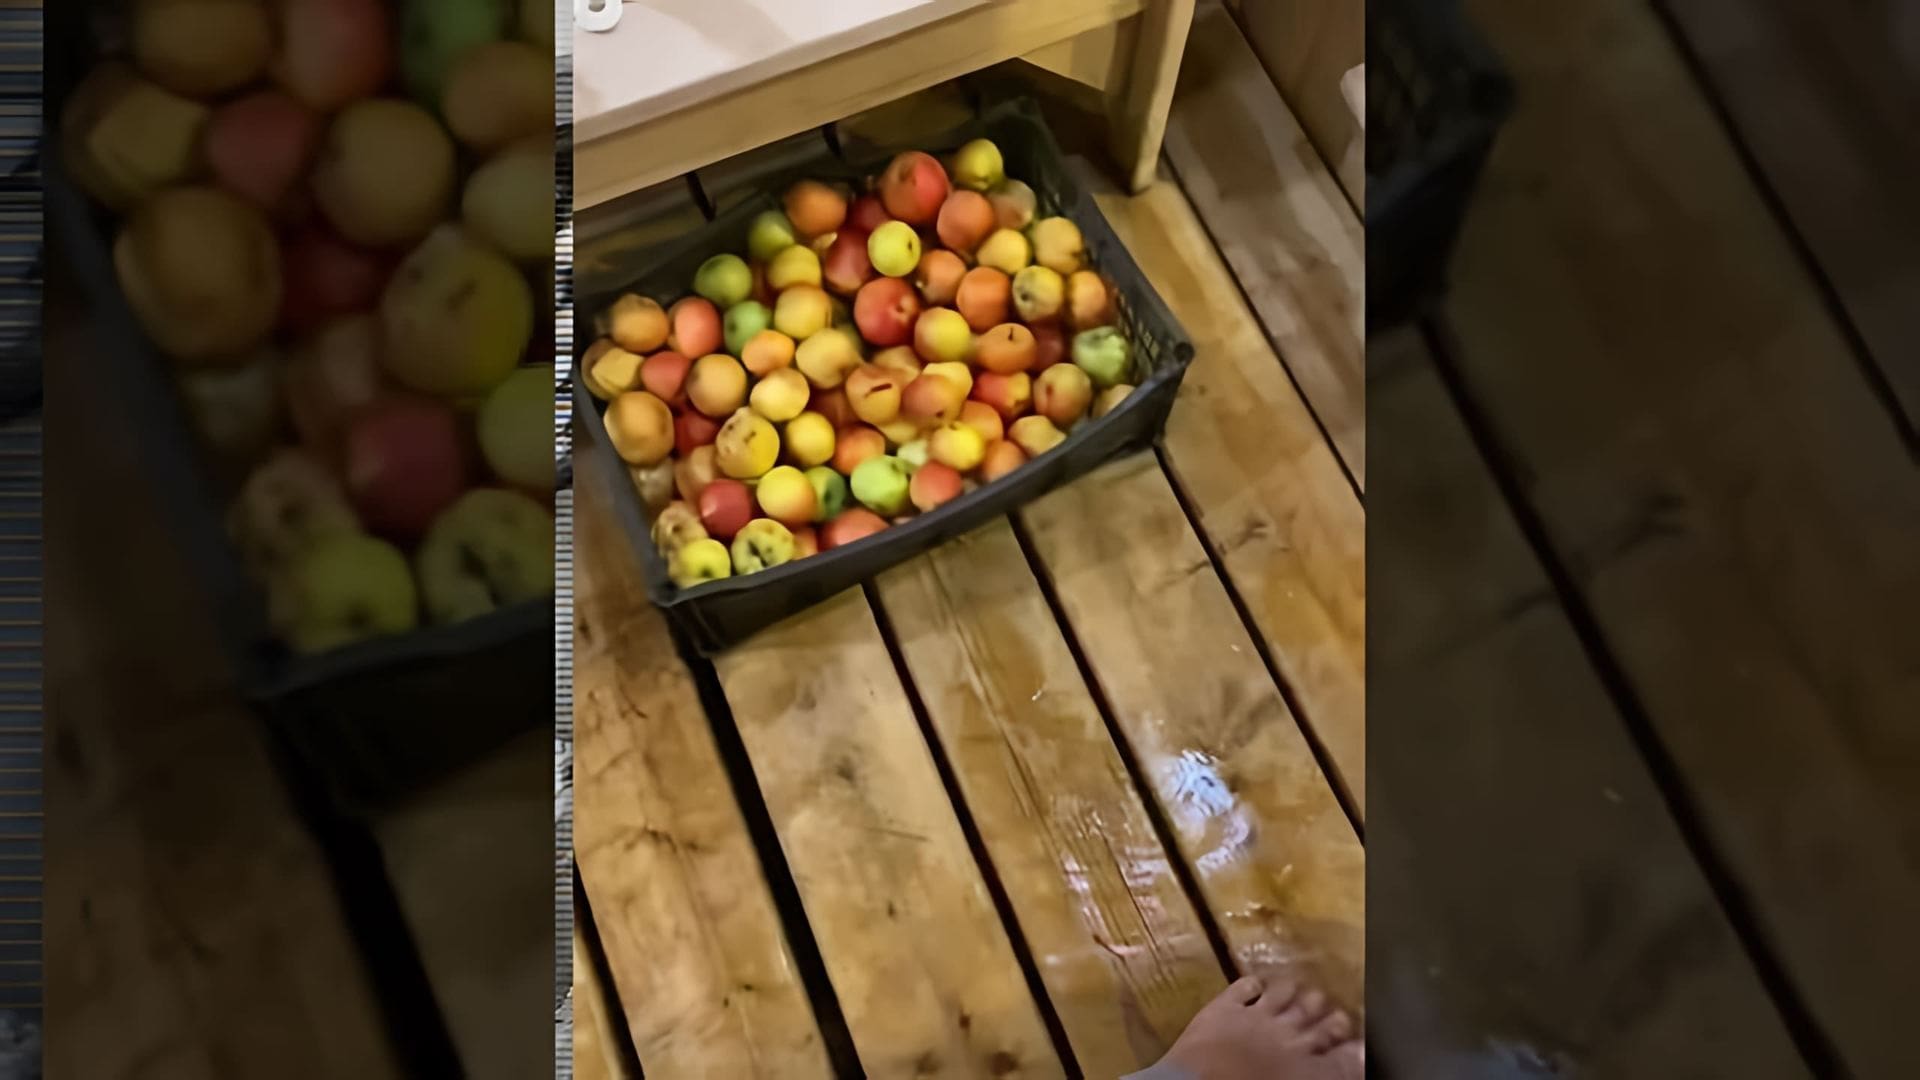 Яблочный сидр за 30 секунд - это видео-ролик, который демонстрирует быстрый и простой способ приготовления яблочного сидра